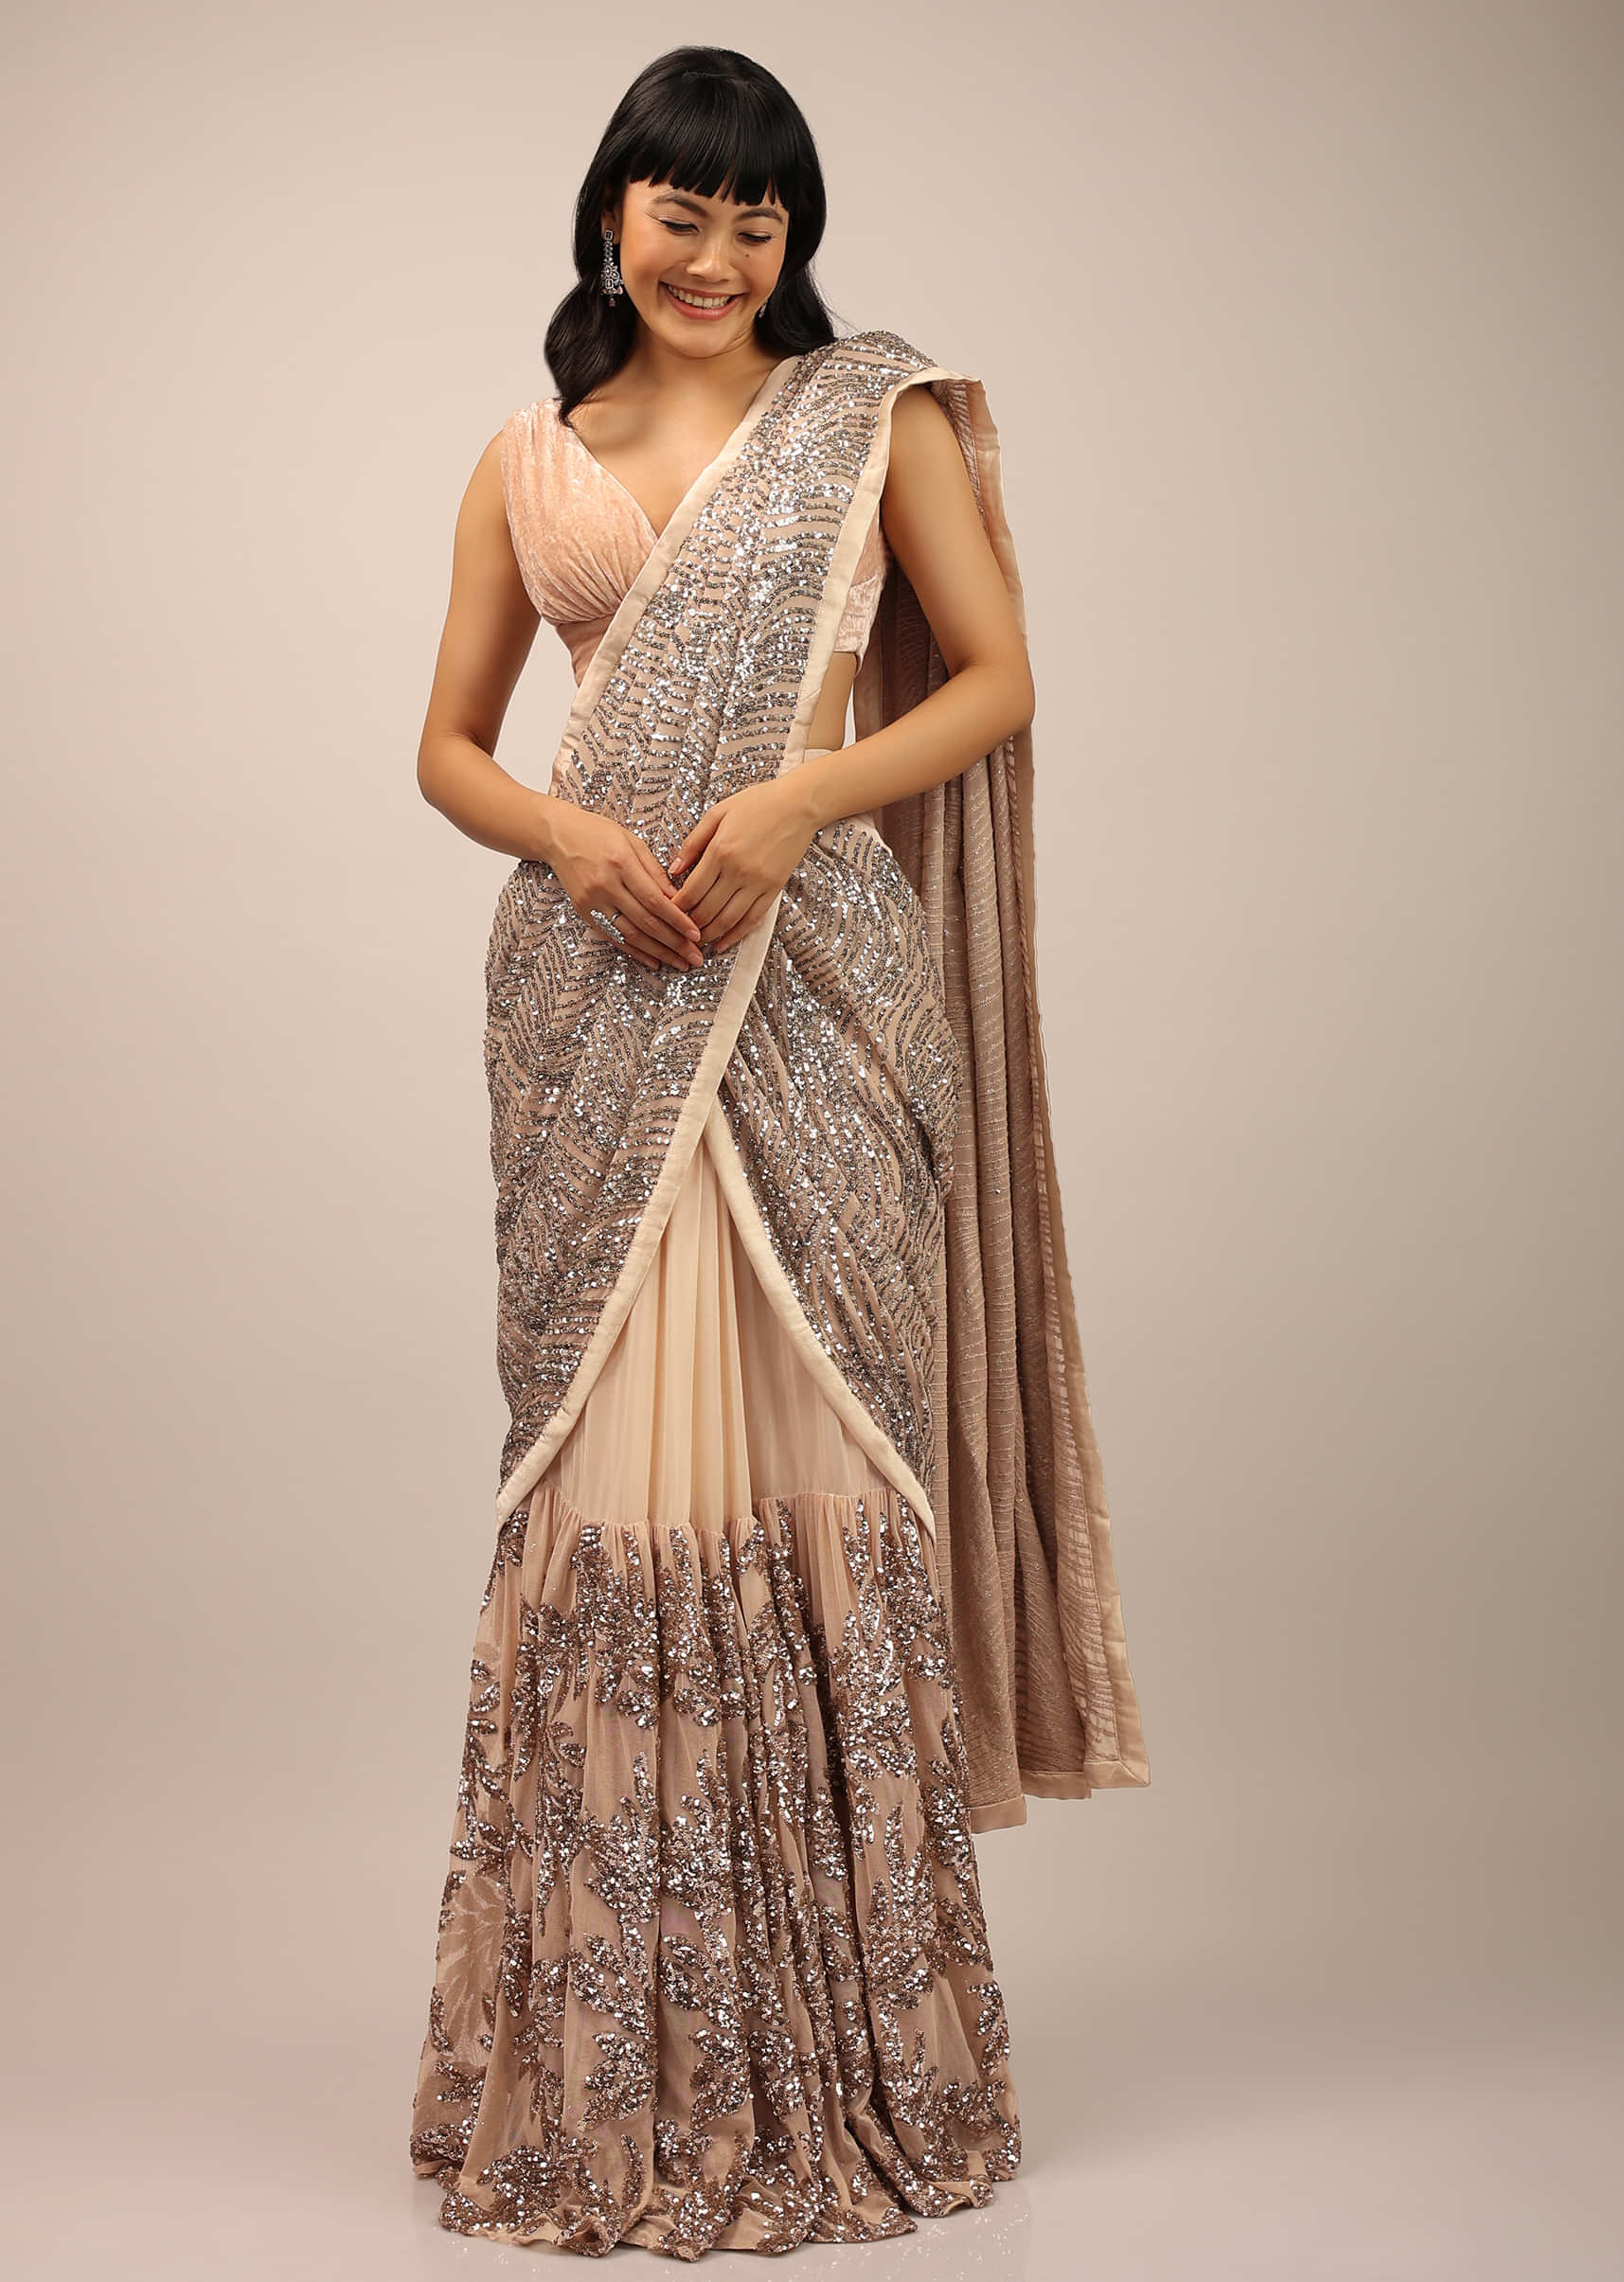 Bridal Blouse: Buy Designer Wedding Saree Blouse Online - Kalki